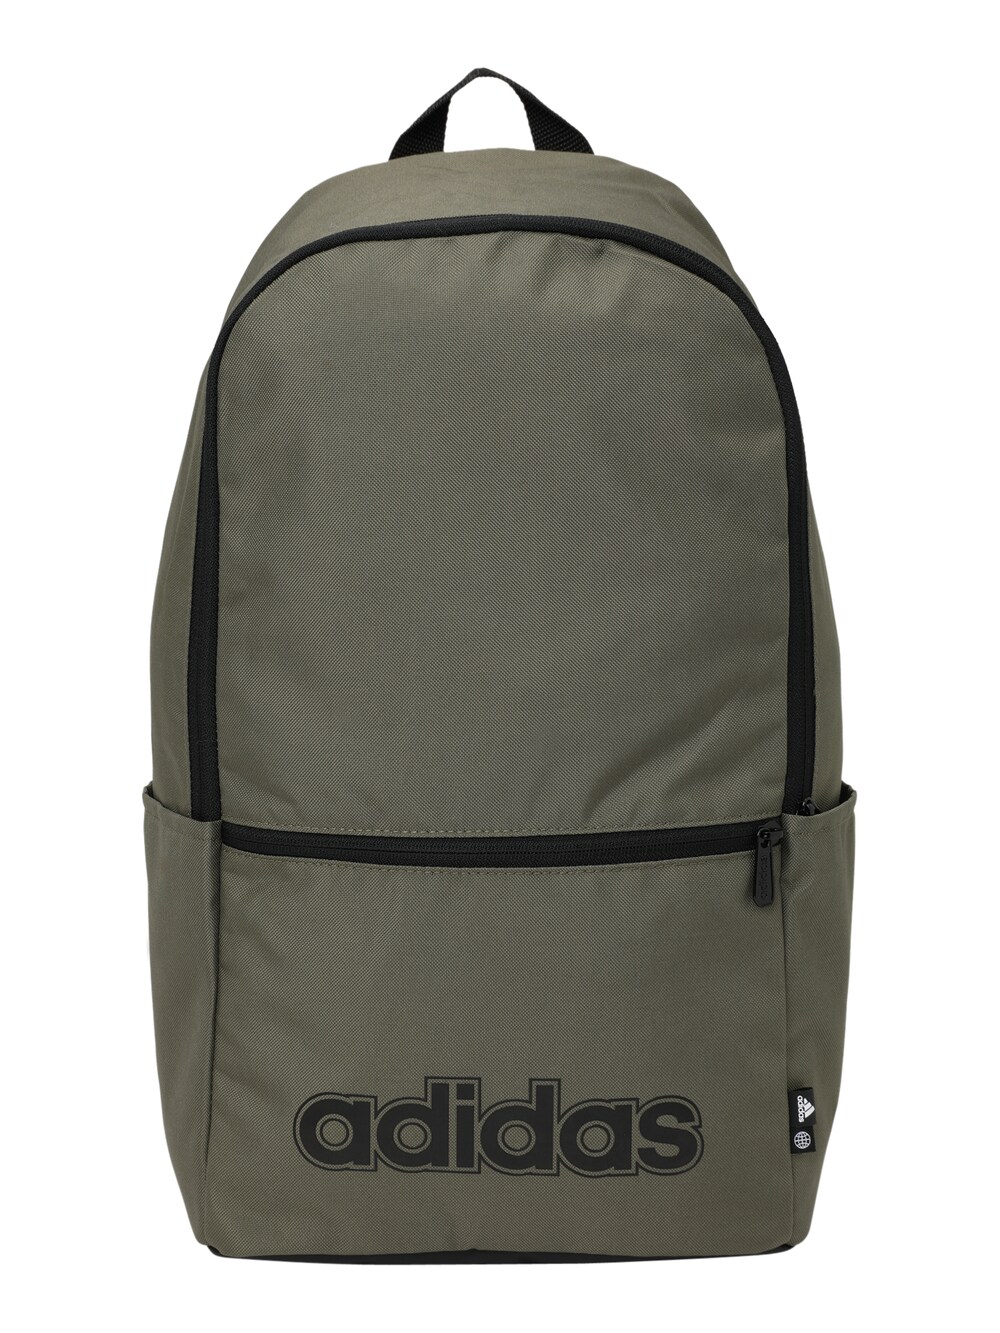 Спортивный рюкзак Adidas Classic Foundation, хаки